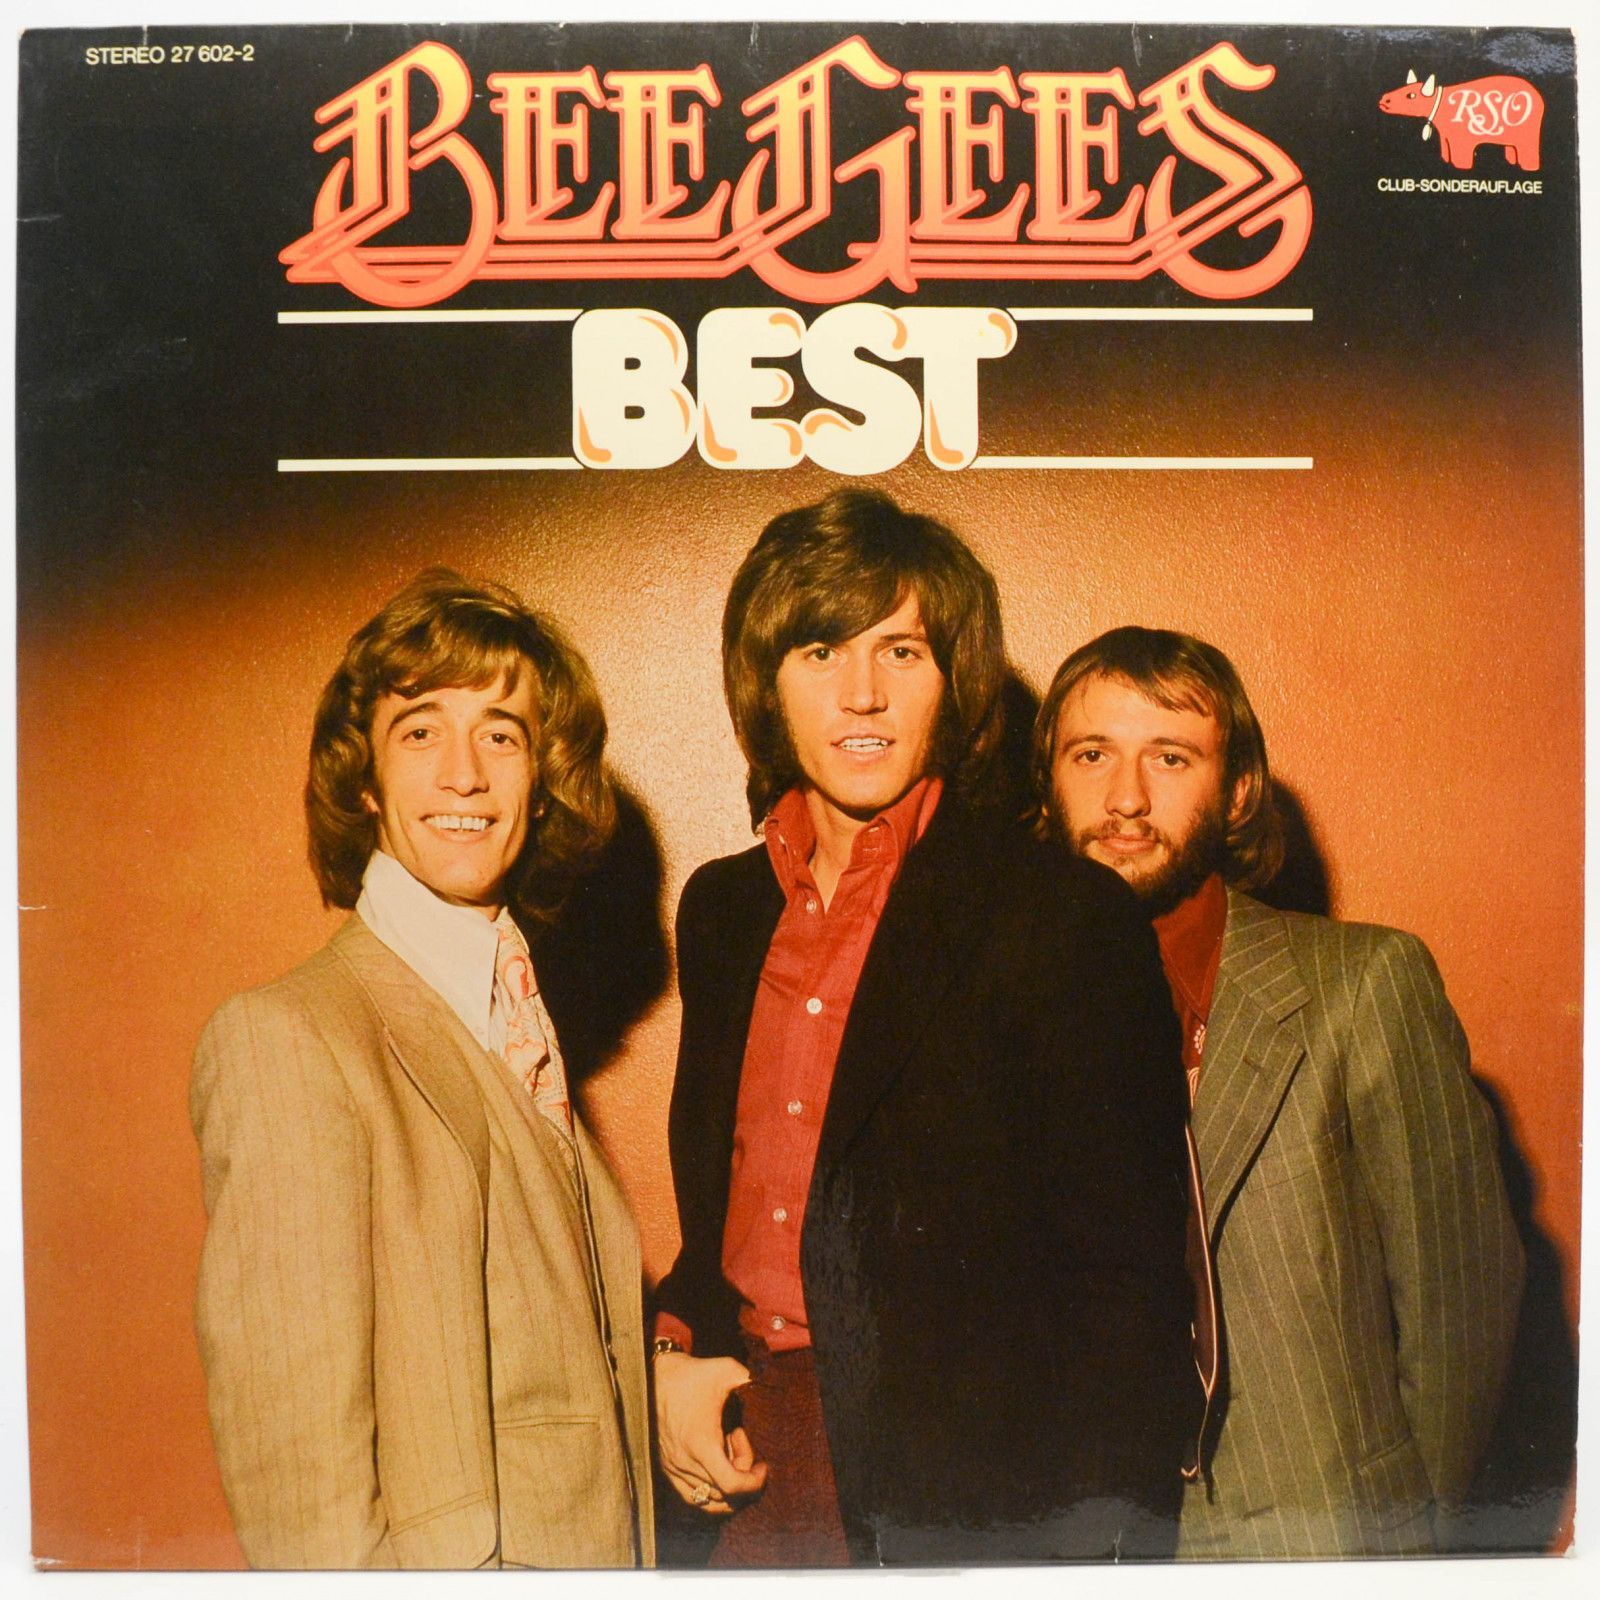 Bee Gees — Best, 1975